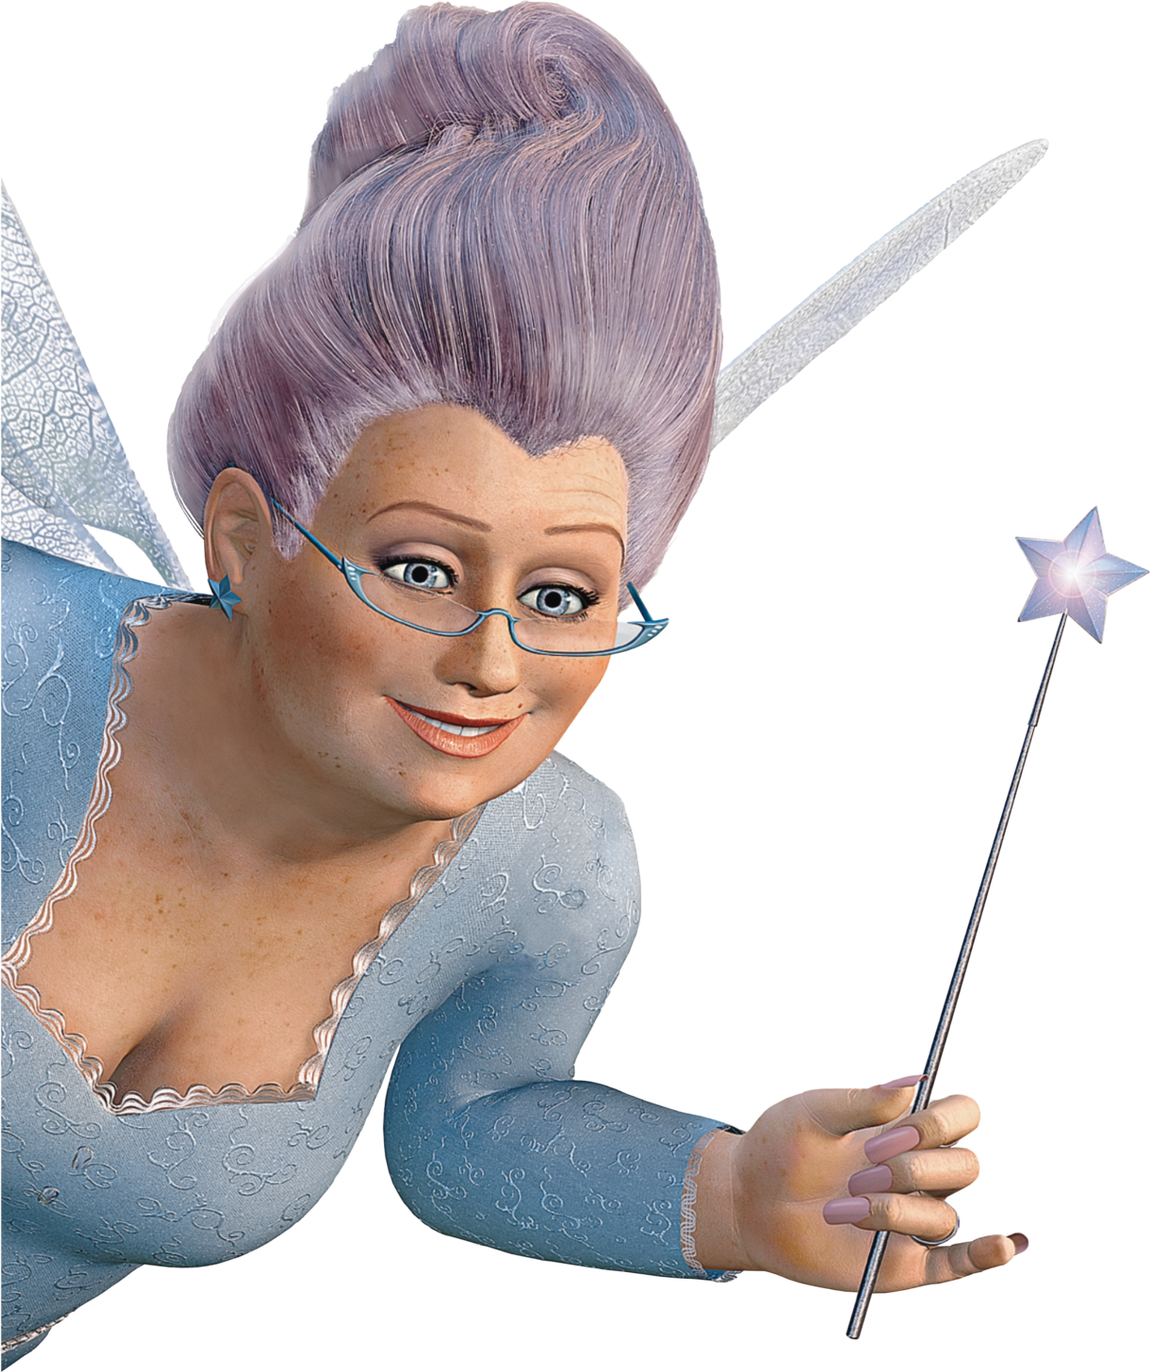 Fairy Godmother | WikiShrek | Fandom powered by Wikia1150 x 1372